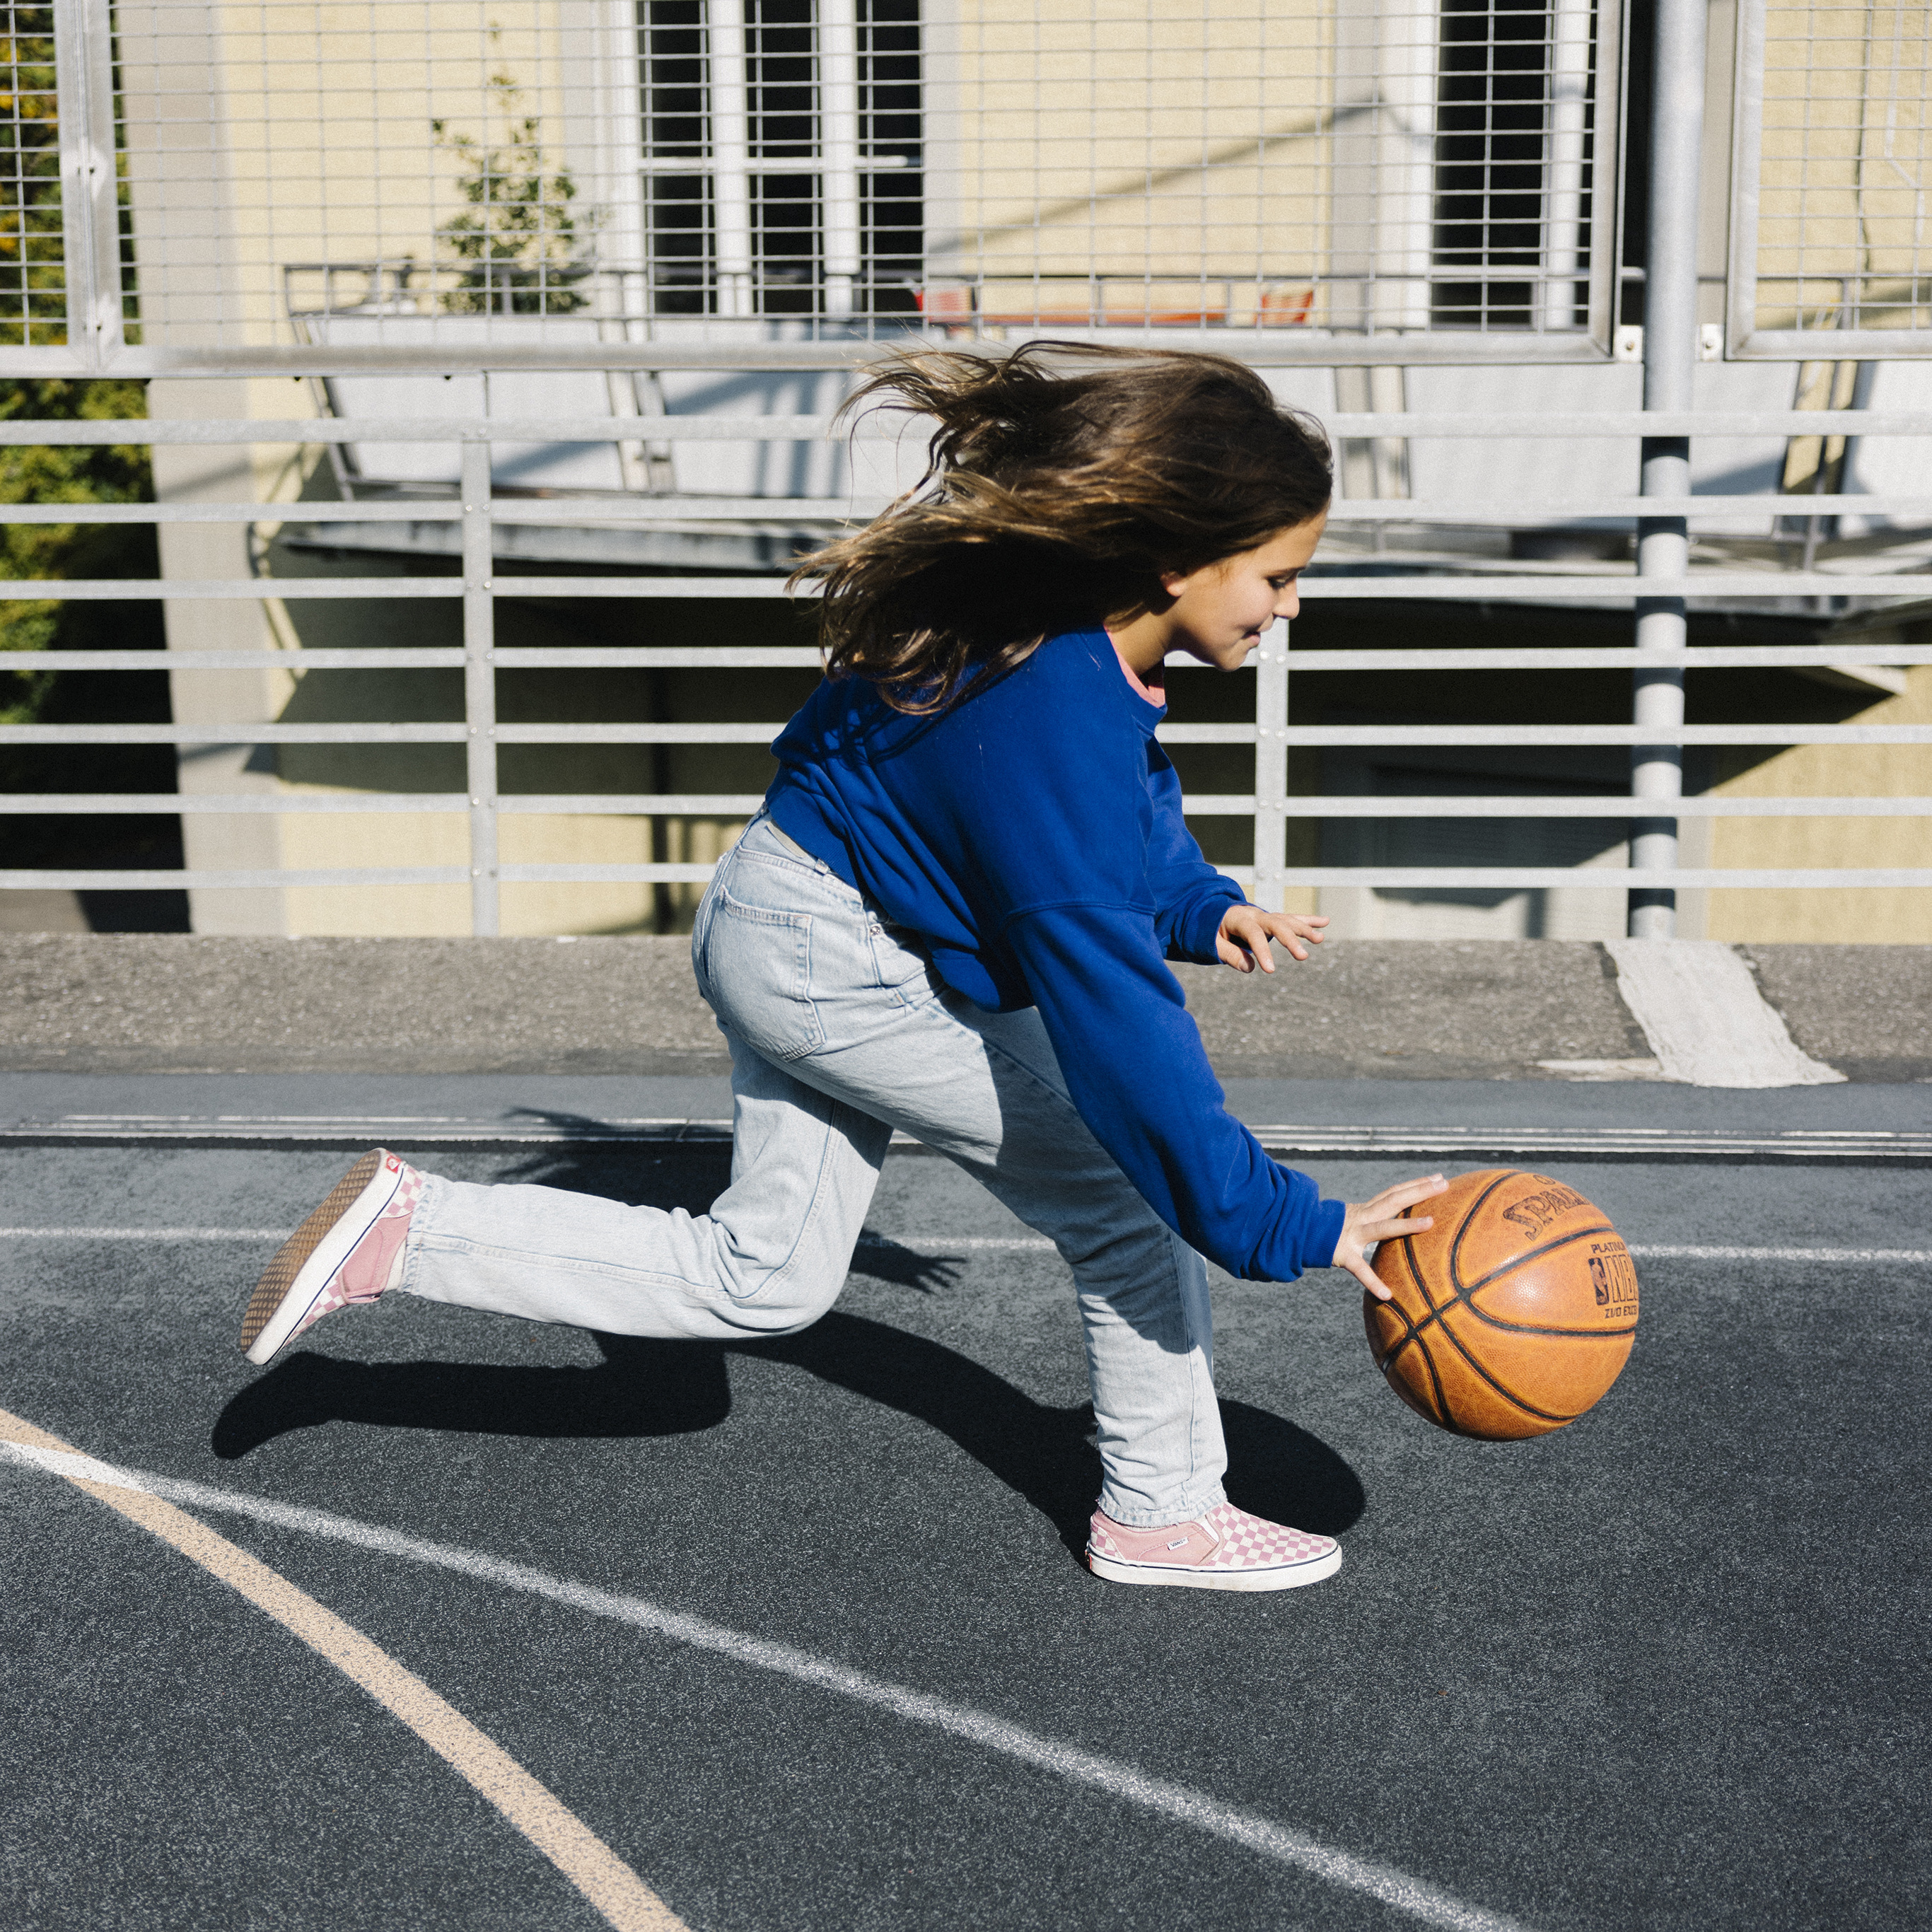 Eine Jugendliche dribbelt im Rennen einen Basketball nahe am Boden.